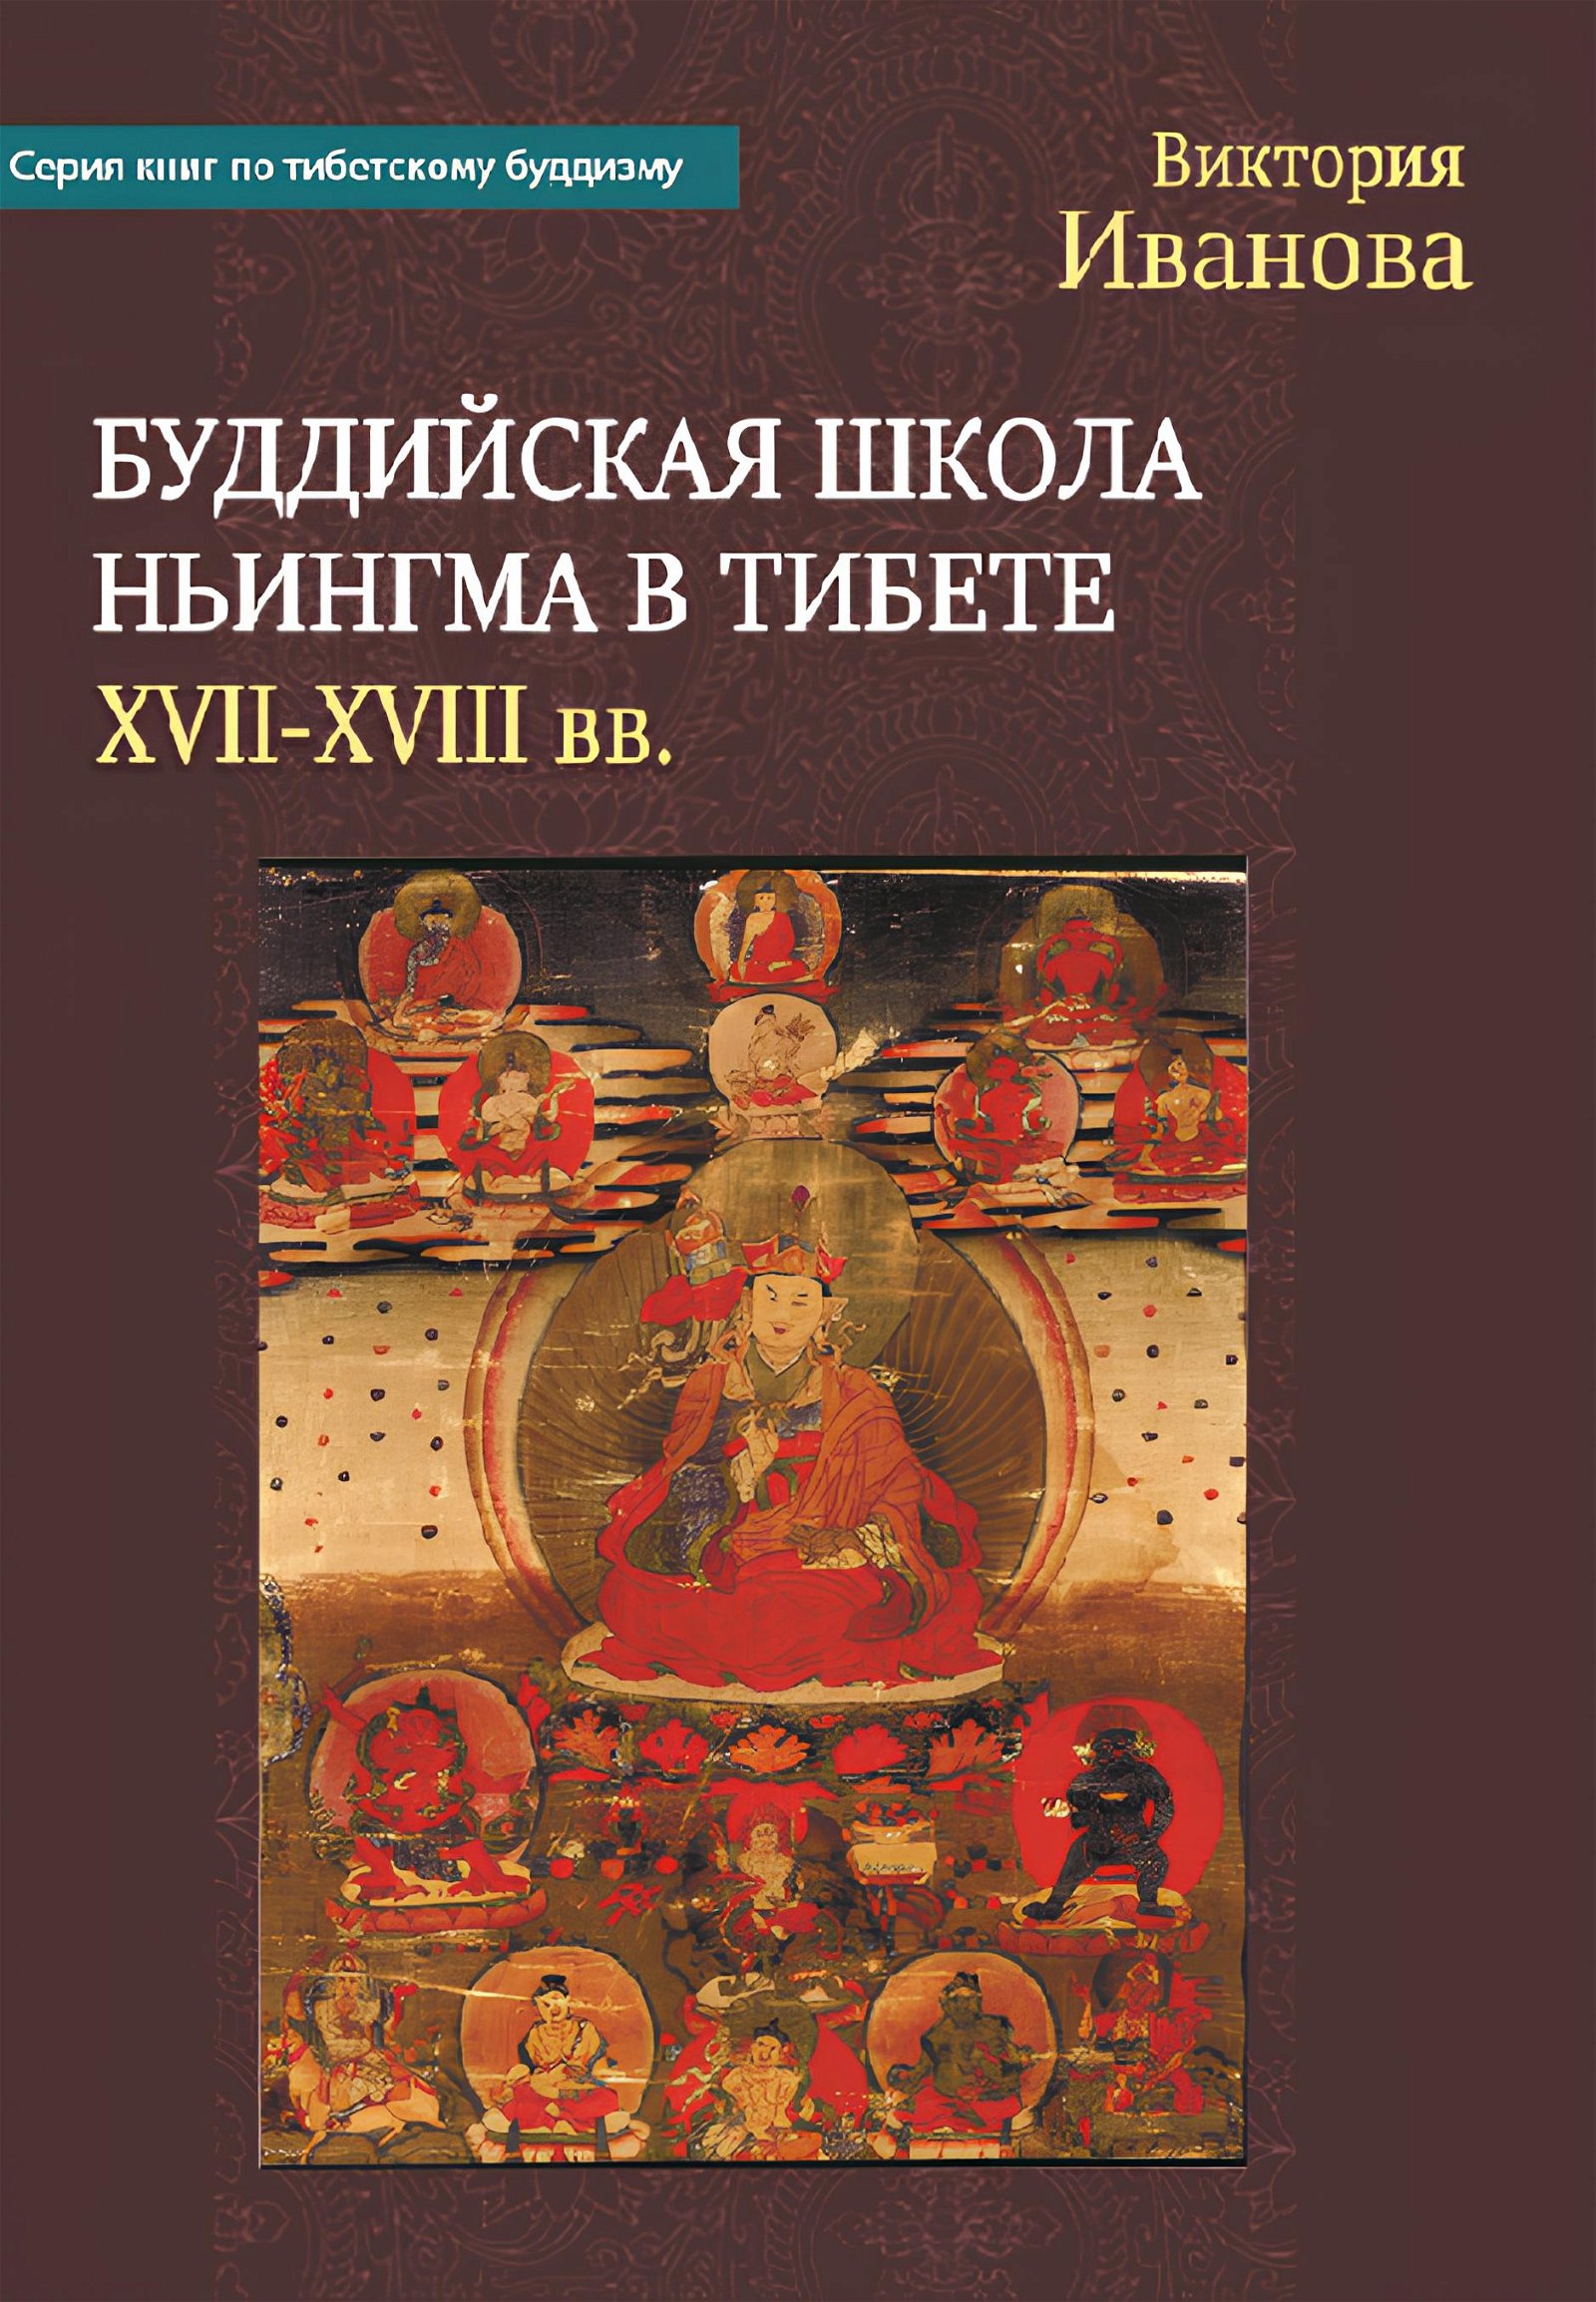 Буддийская школа Ньингма в Тибете (XVII-XVIII вв.). 